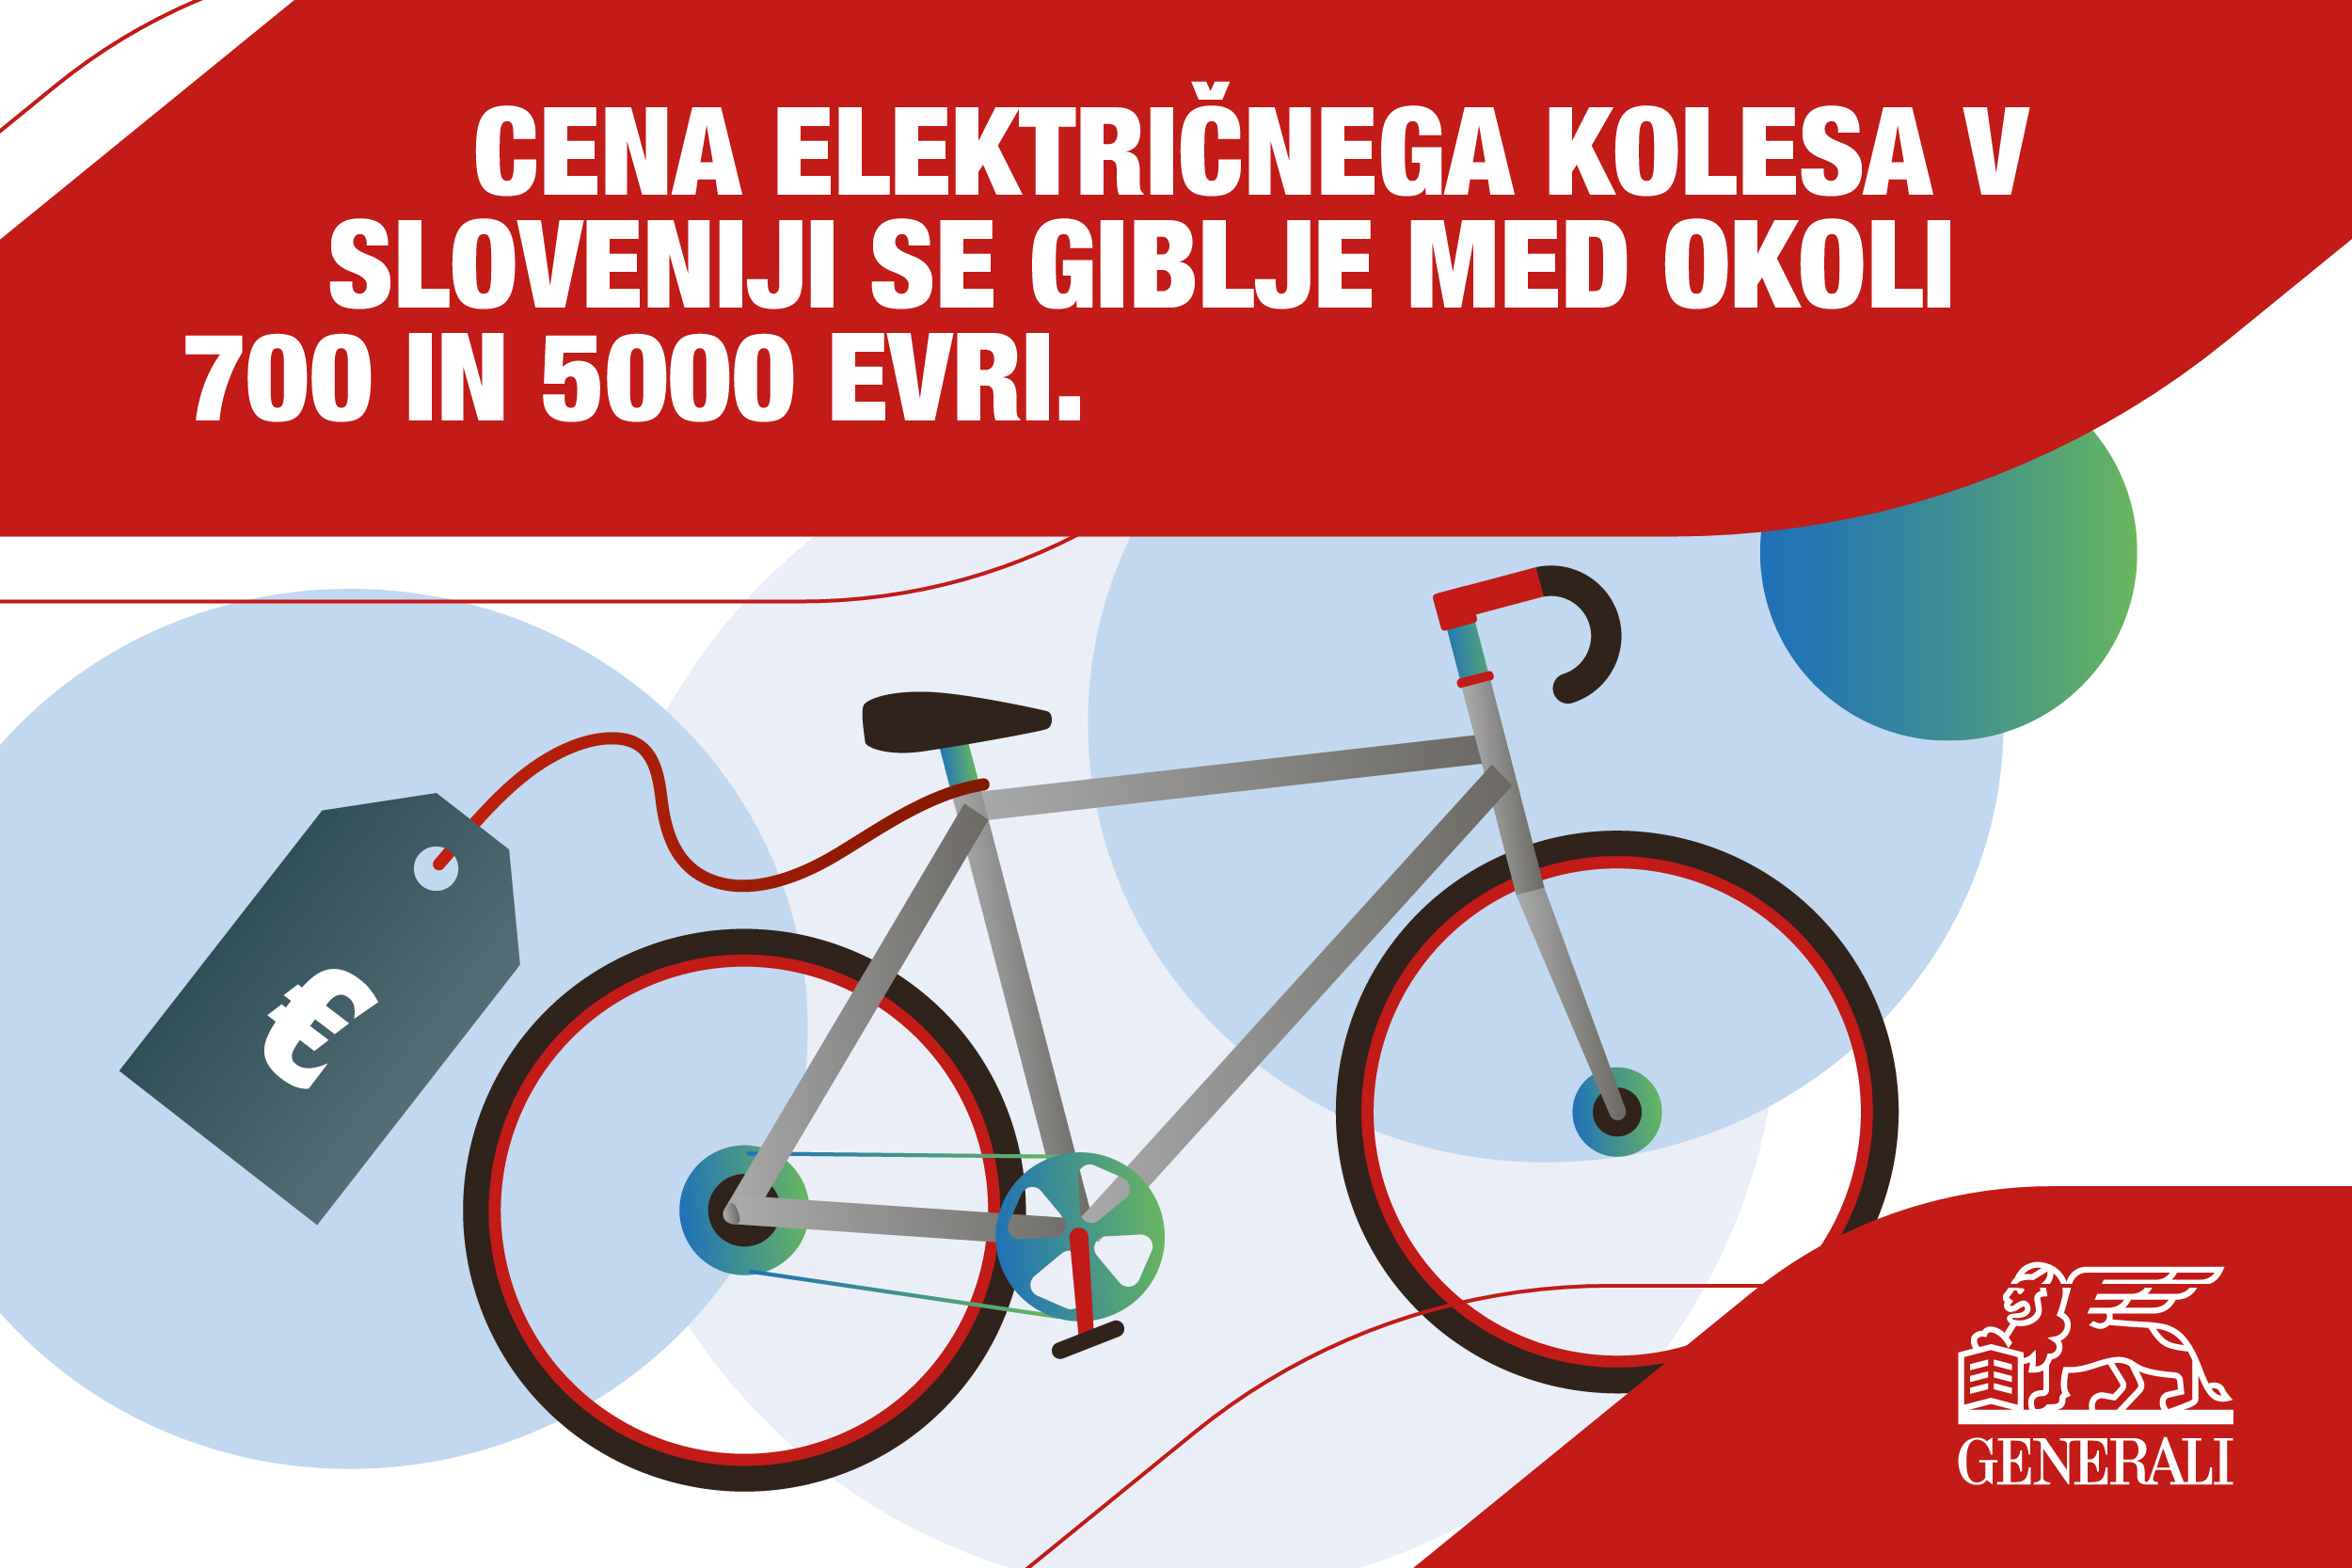 Cena električnega kolesa v Sloveniji se giblje med okoli 700 in 5000 evri.